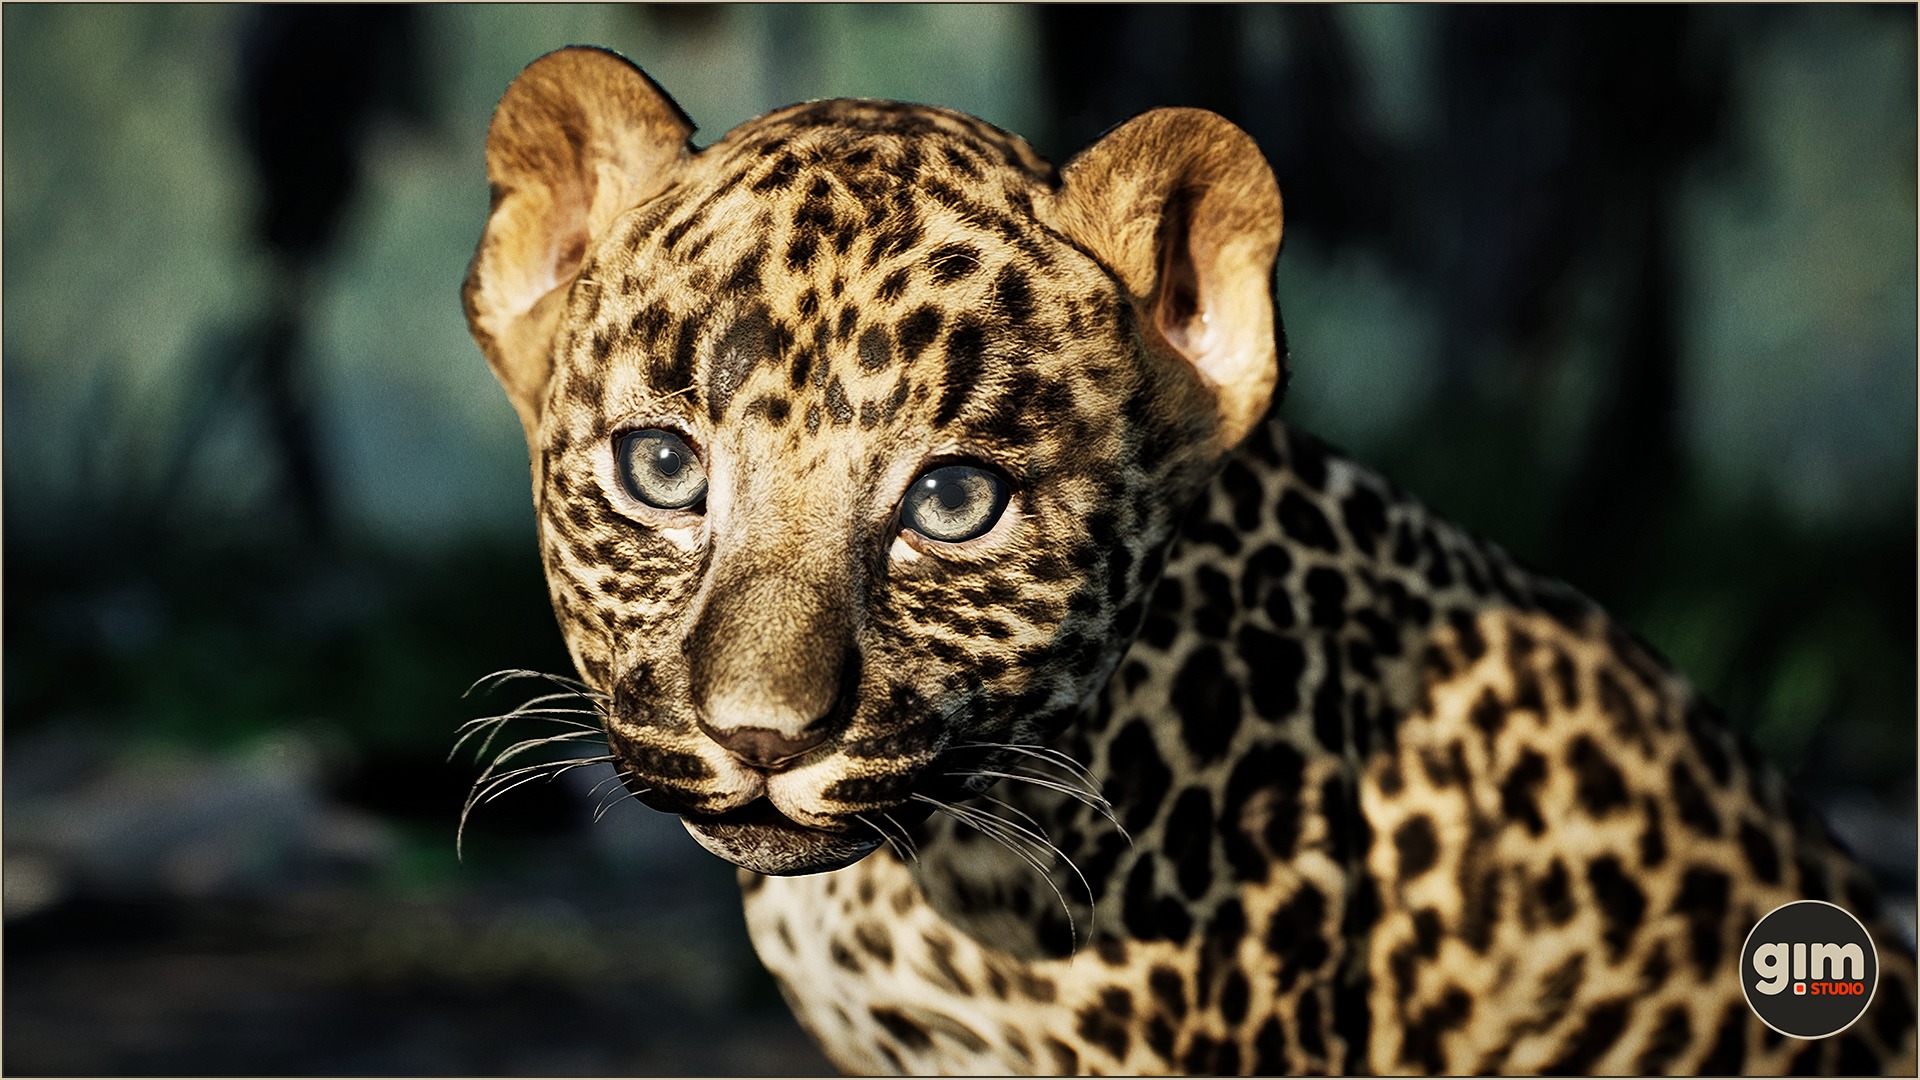 Cute young leopard in a close-up shot